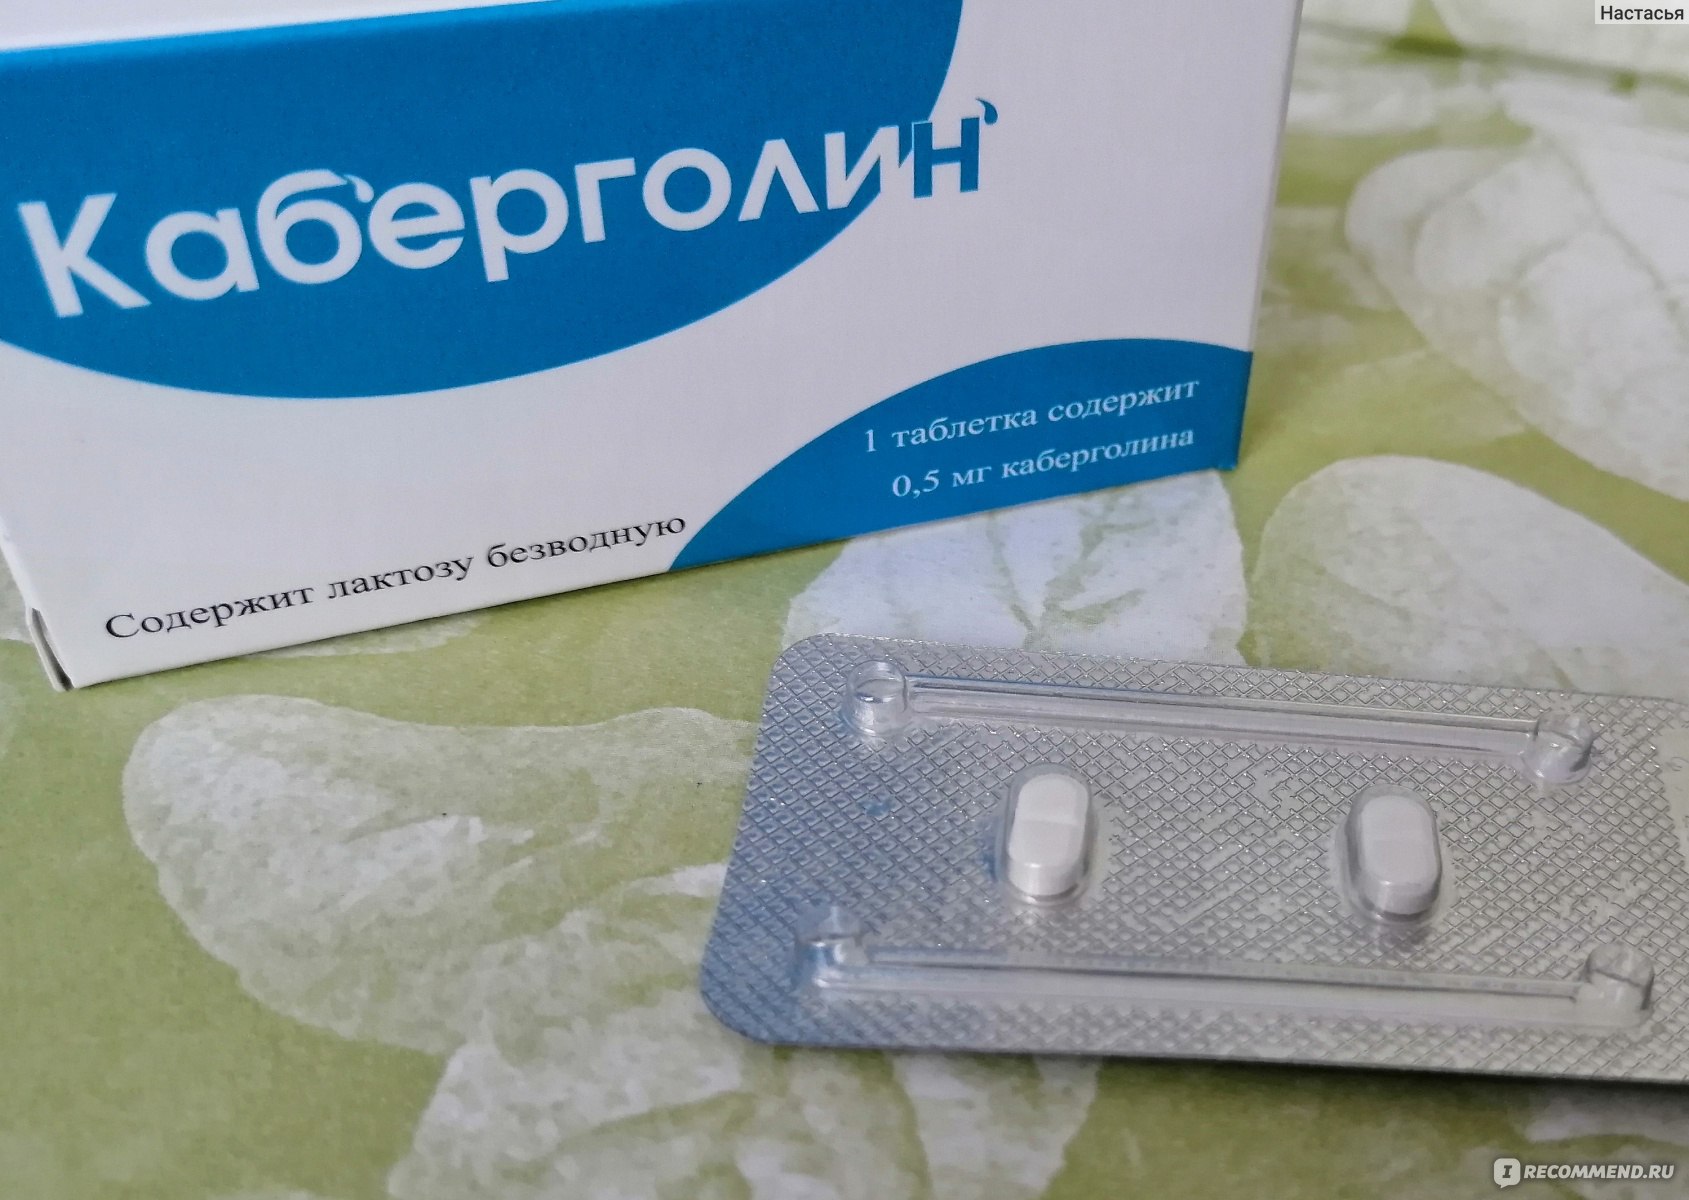 Гормональный препарат ОХФК Каберголин для снижения пролактина .